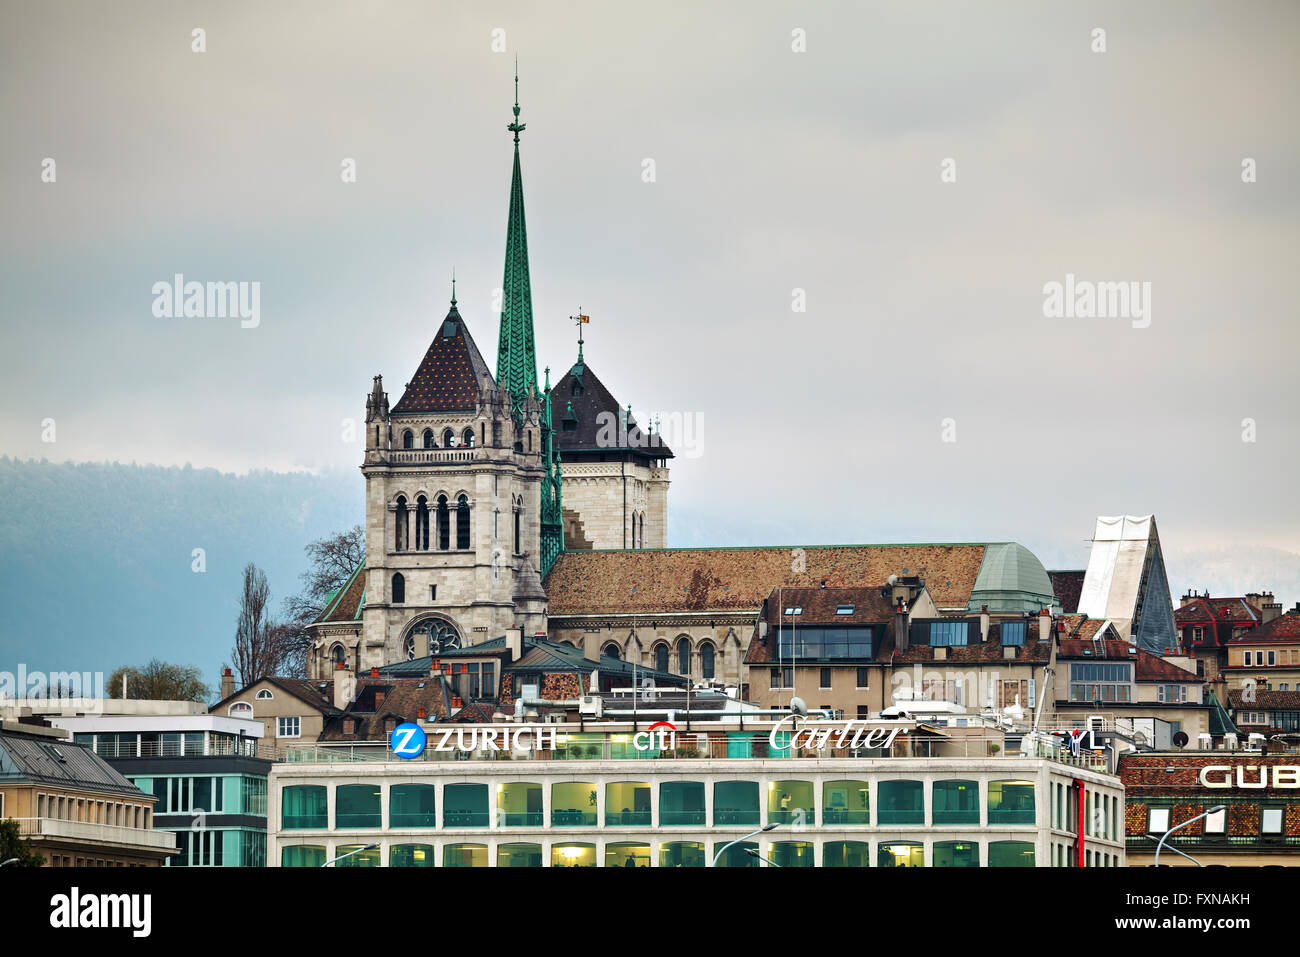 Genf, Schweiz - NOVEMBER 27: Genf Stadtbild Übersicht mit Kathedrale St-Pierre am 27. November 2015 in Genf Stockfoto